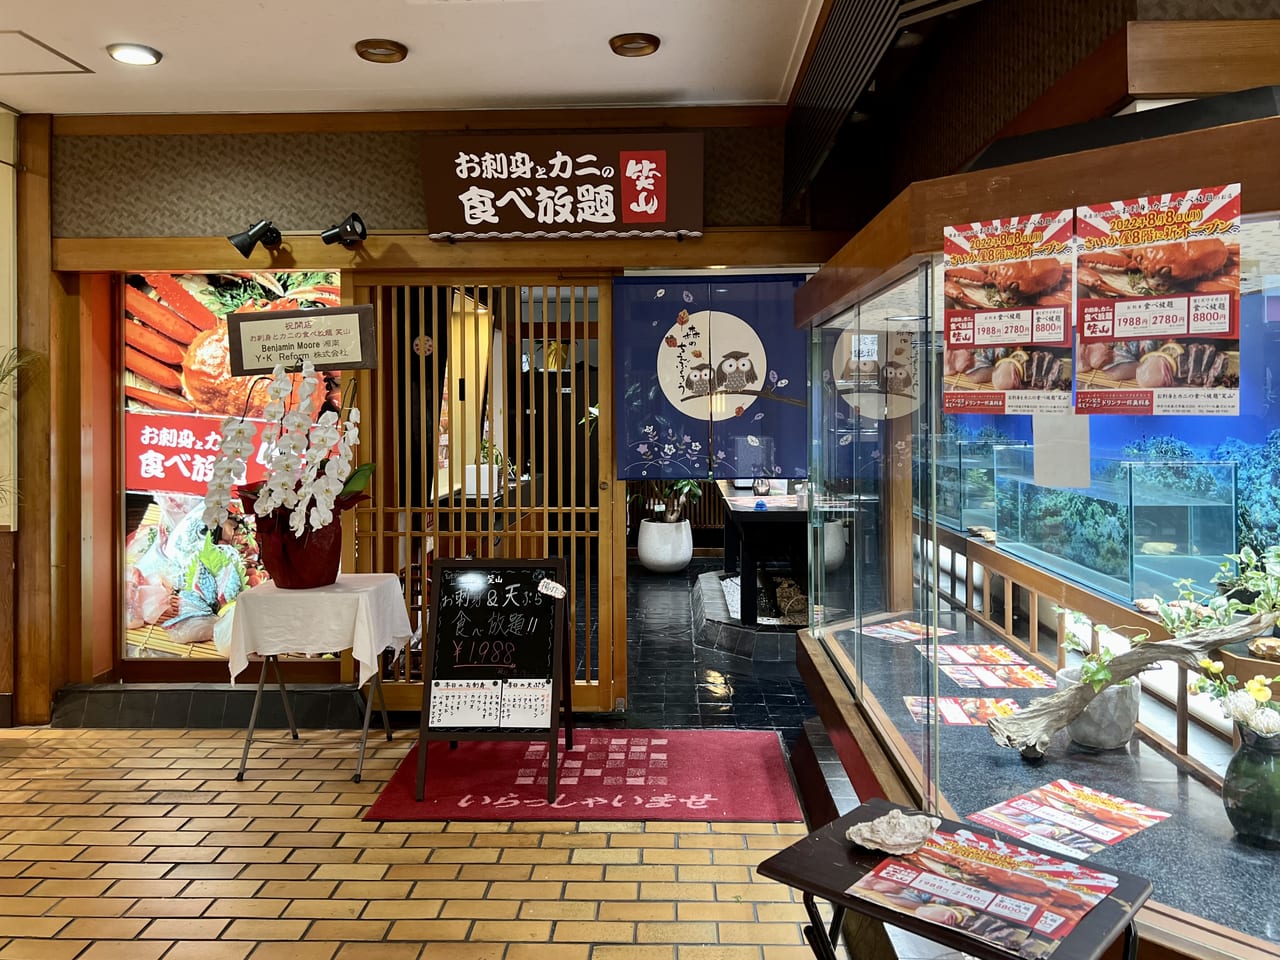 藤沢市 さいか屋藤沢店のレストラン街にオープンした お刺身とカニの食べ放題 笑山 で お得すぎるランチを堪能しました 号外net 藤沢市